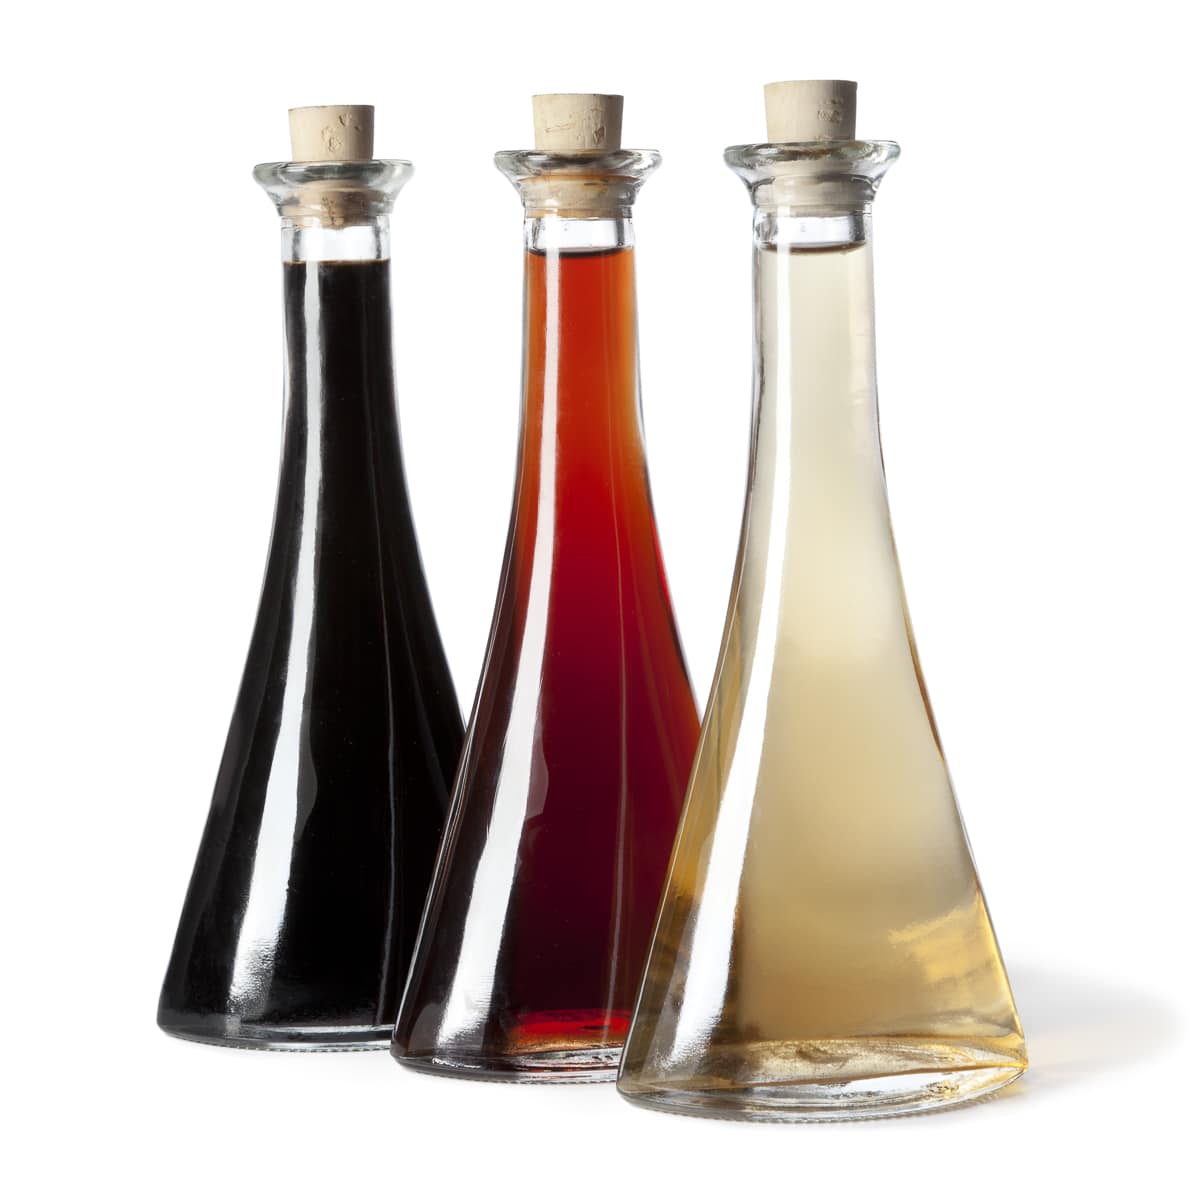 Different red wine vinegar substitutes